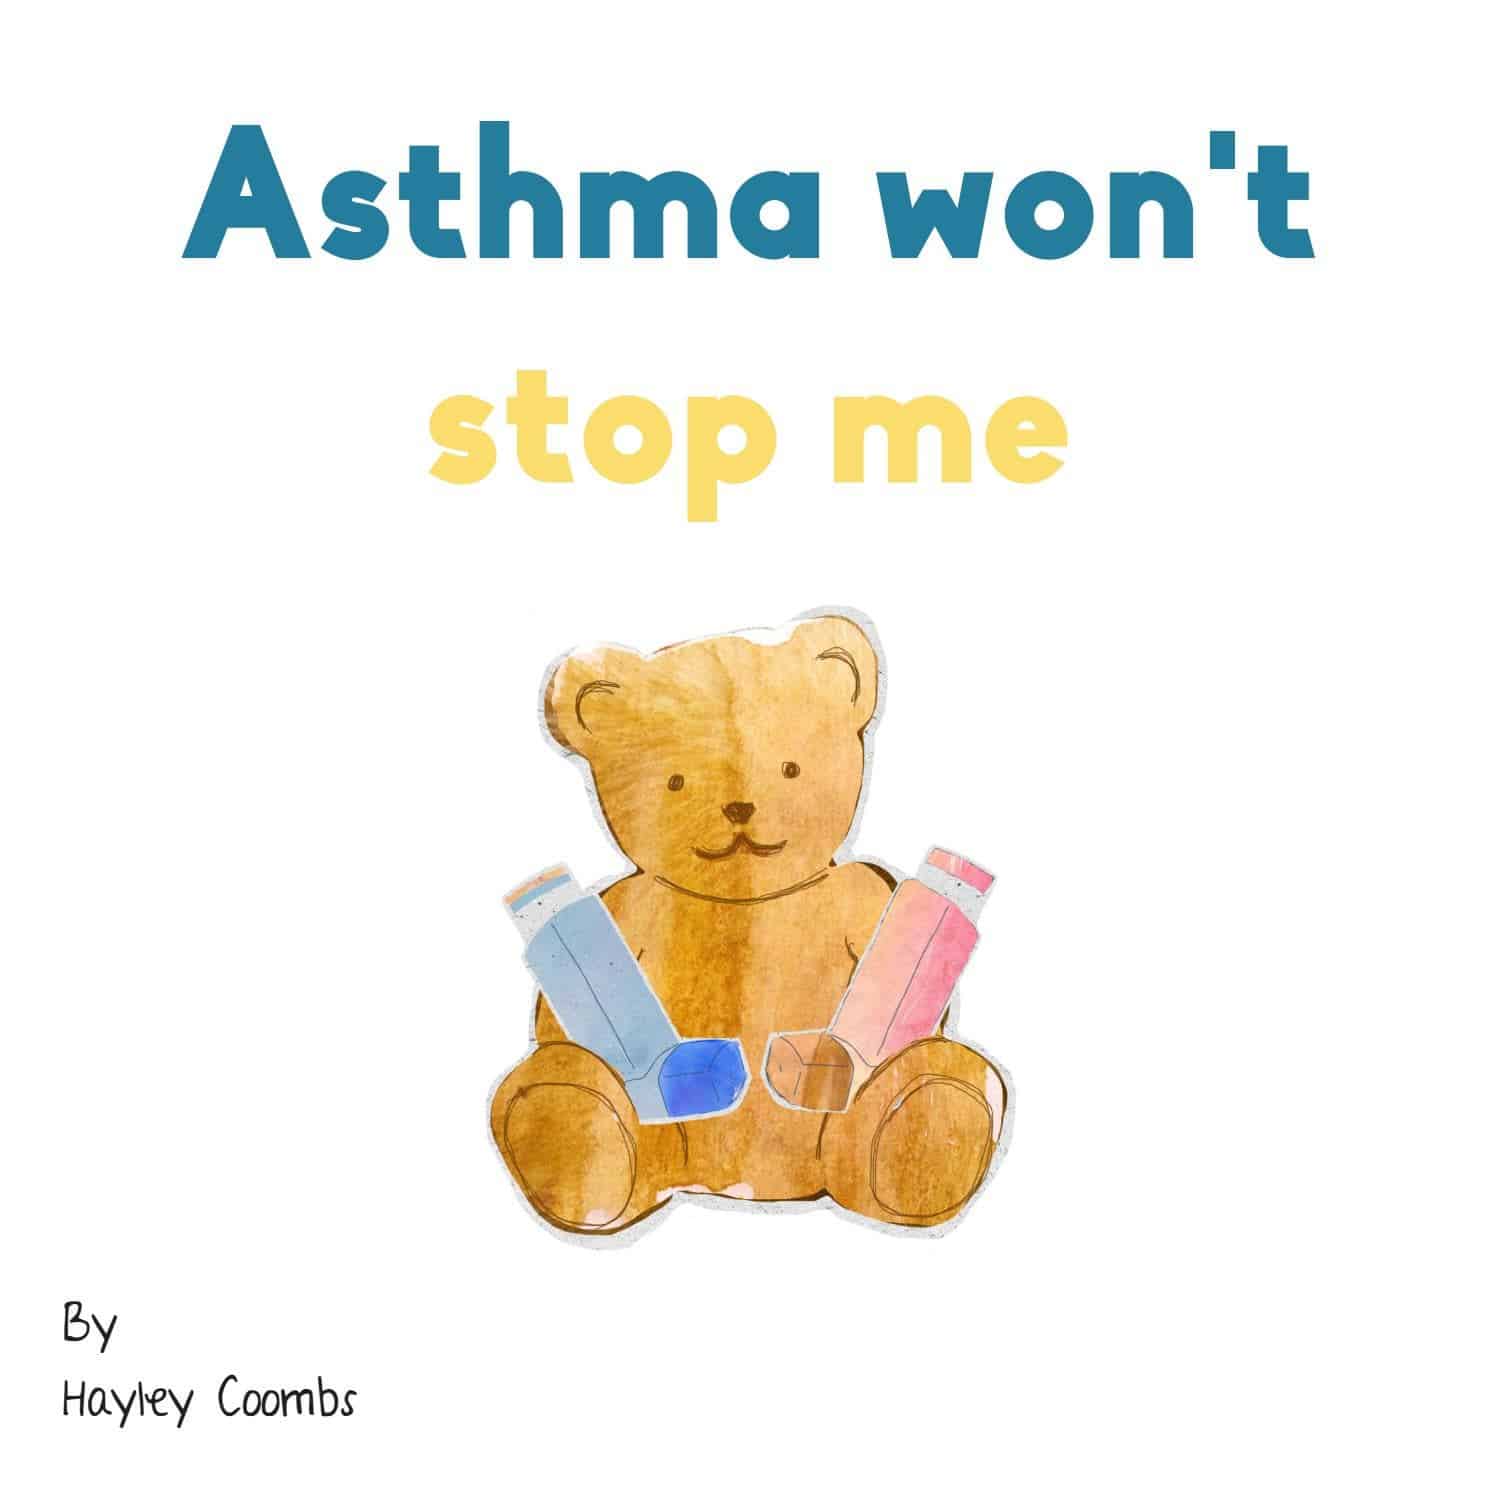 Asthma won